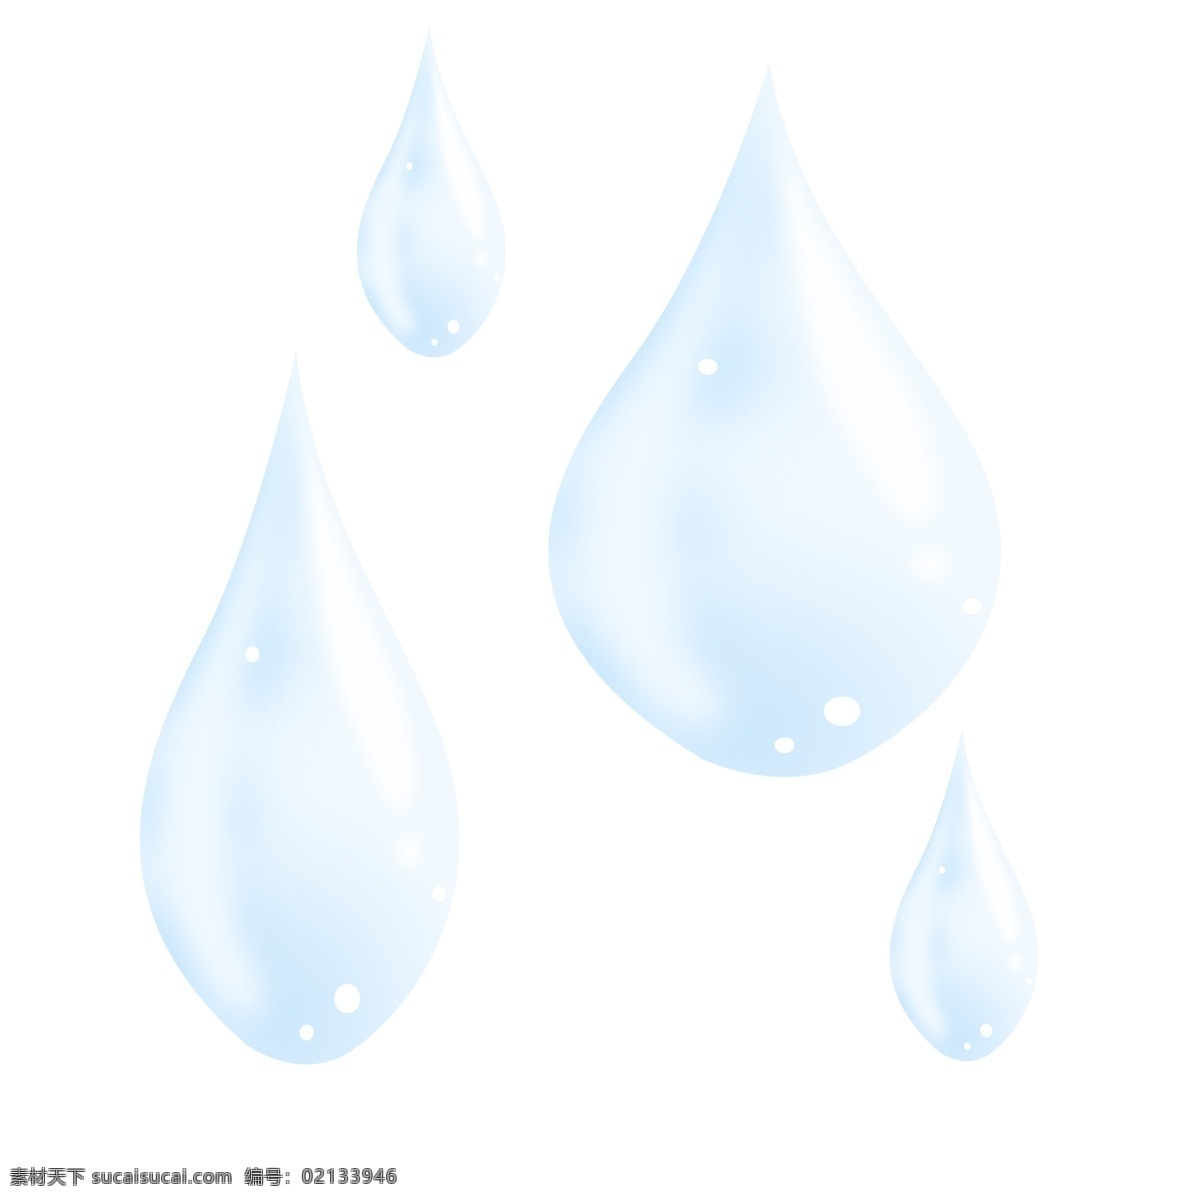 蓝色水滴 水滴 水 水元素 水素材 水滴元素 水滴素材 蓝色 蓝色元素 蓝色素材 水纹 谷雨 雨水 雨季 雨季元素 雨季素材 分层